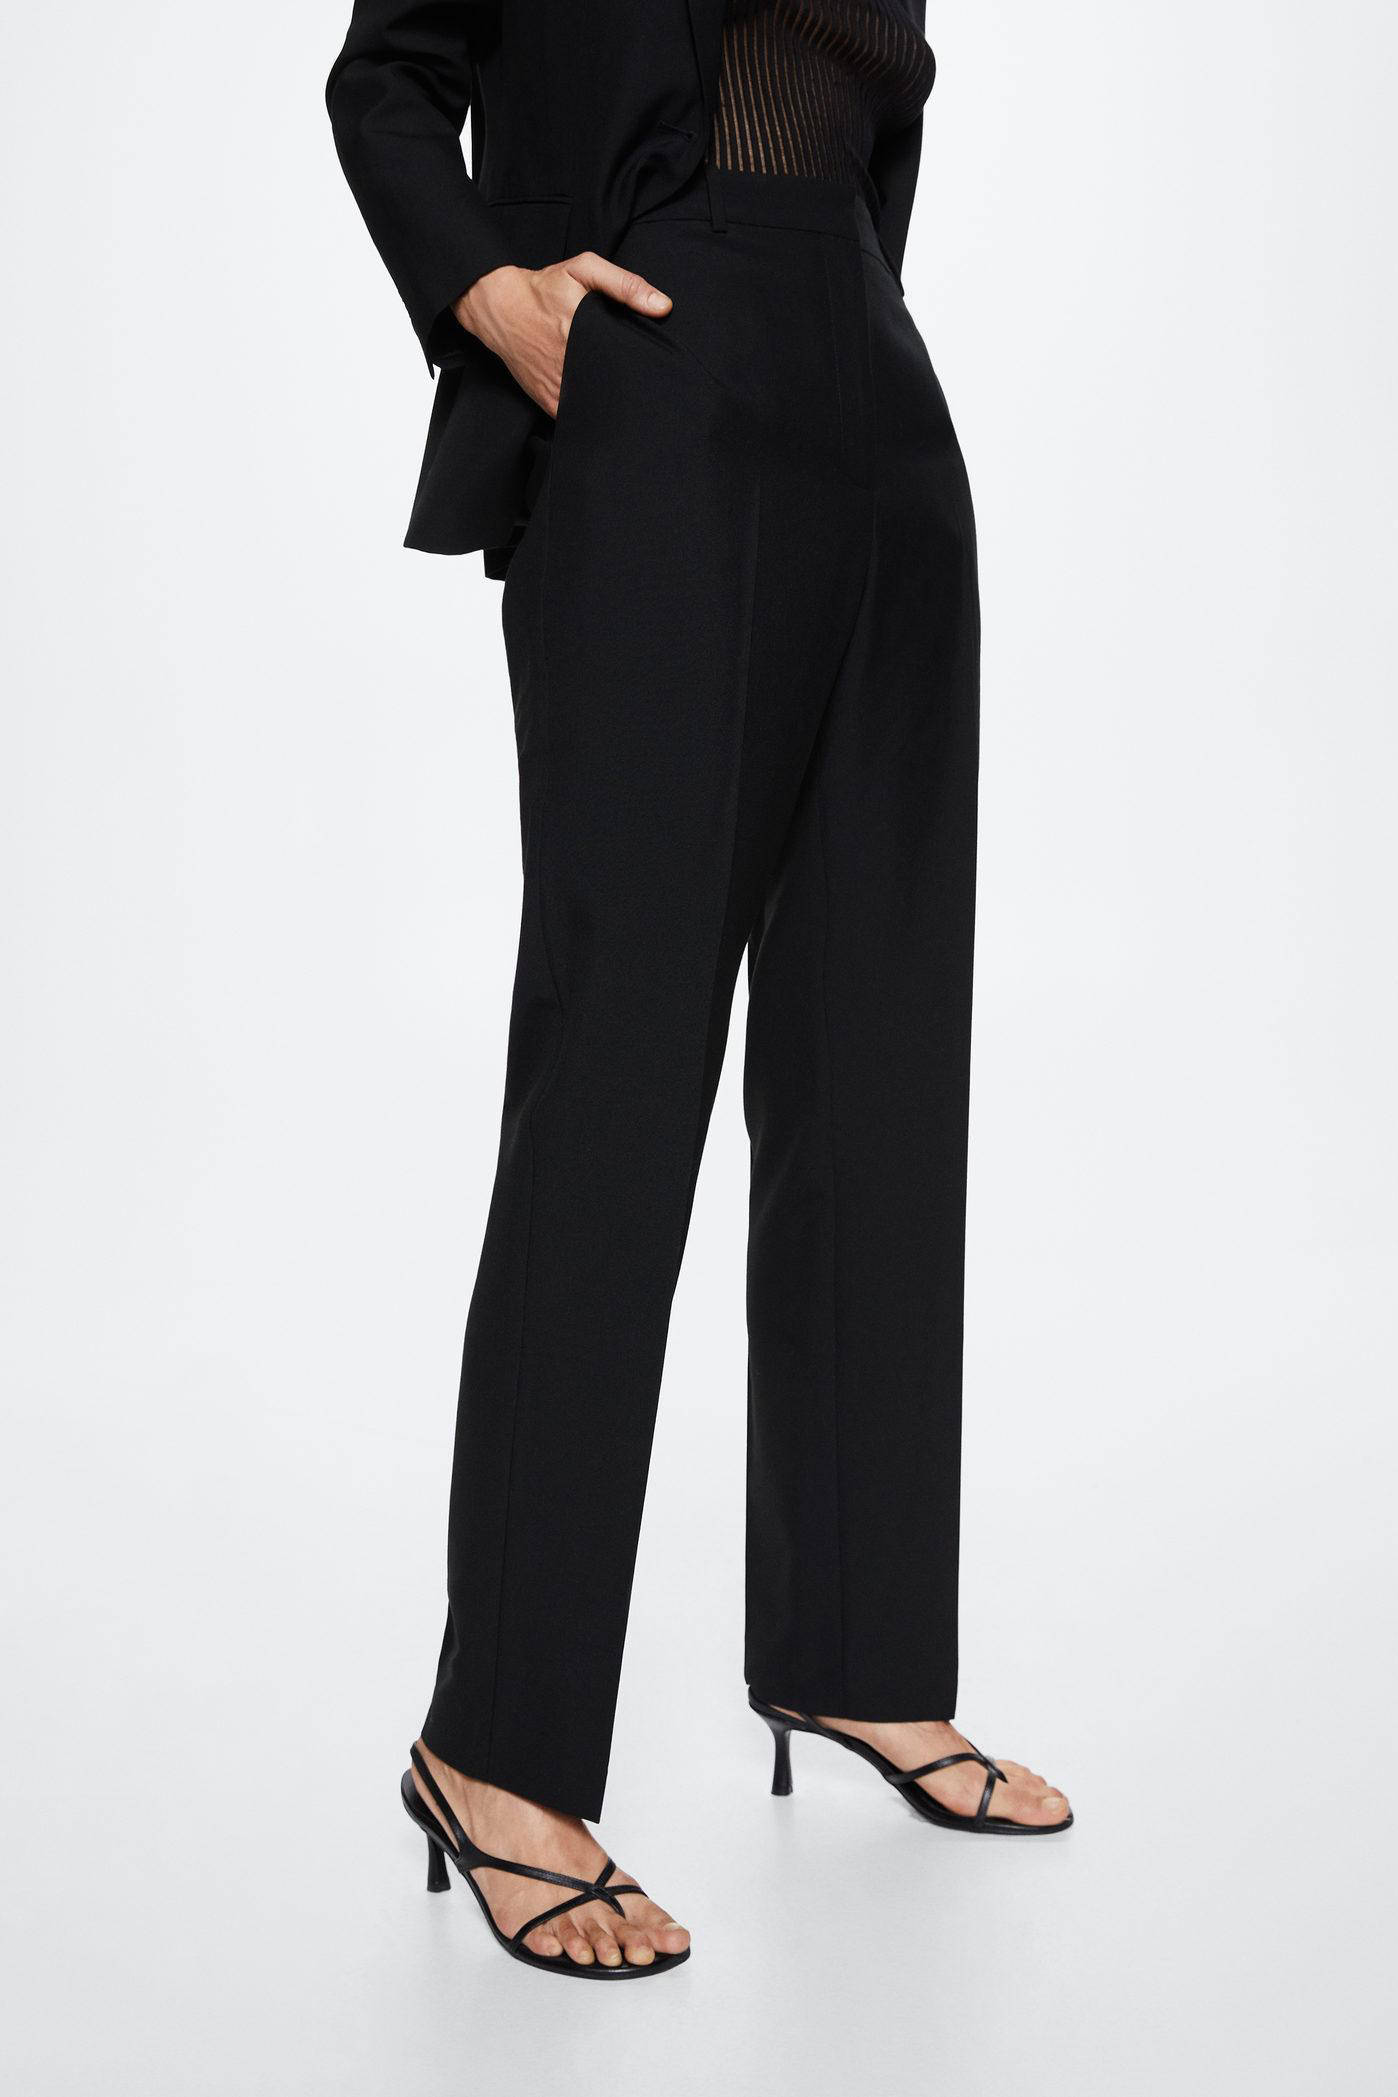 Gibierre Donna GBR Wollen broek zwart casual uitstraling Mode Broeken Wollen broeken 